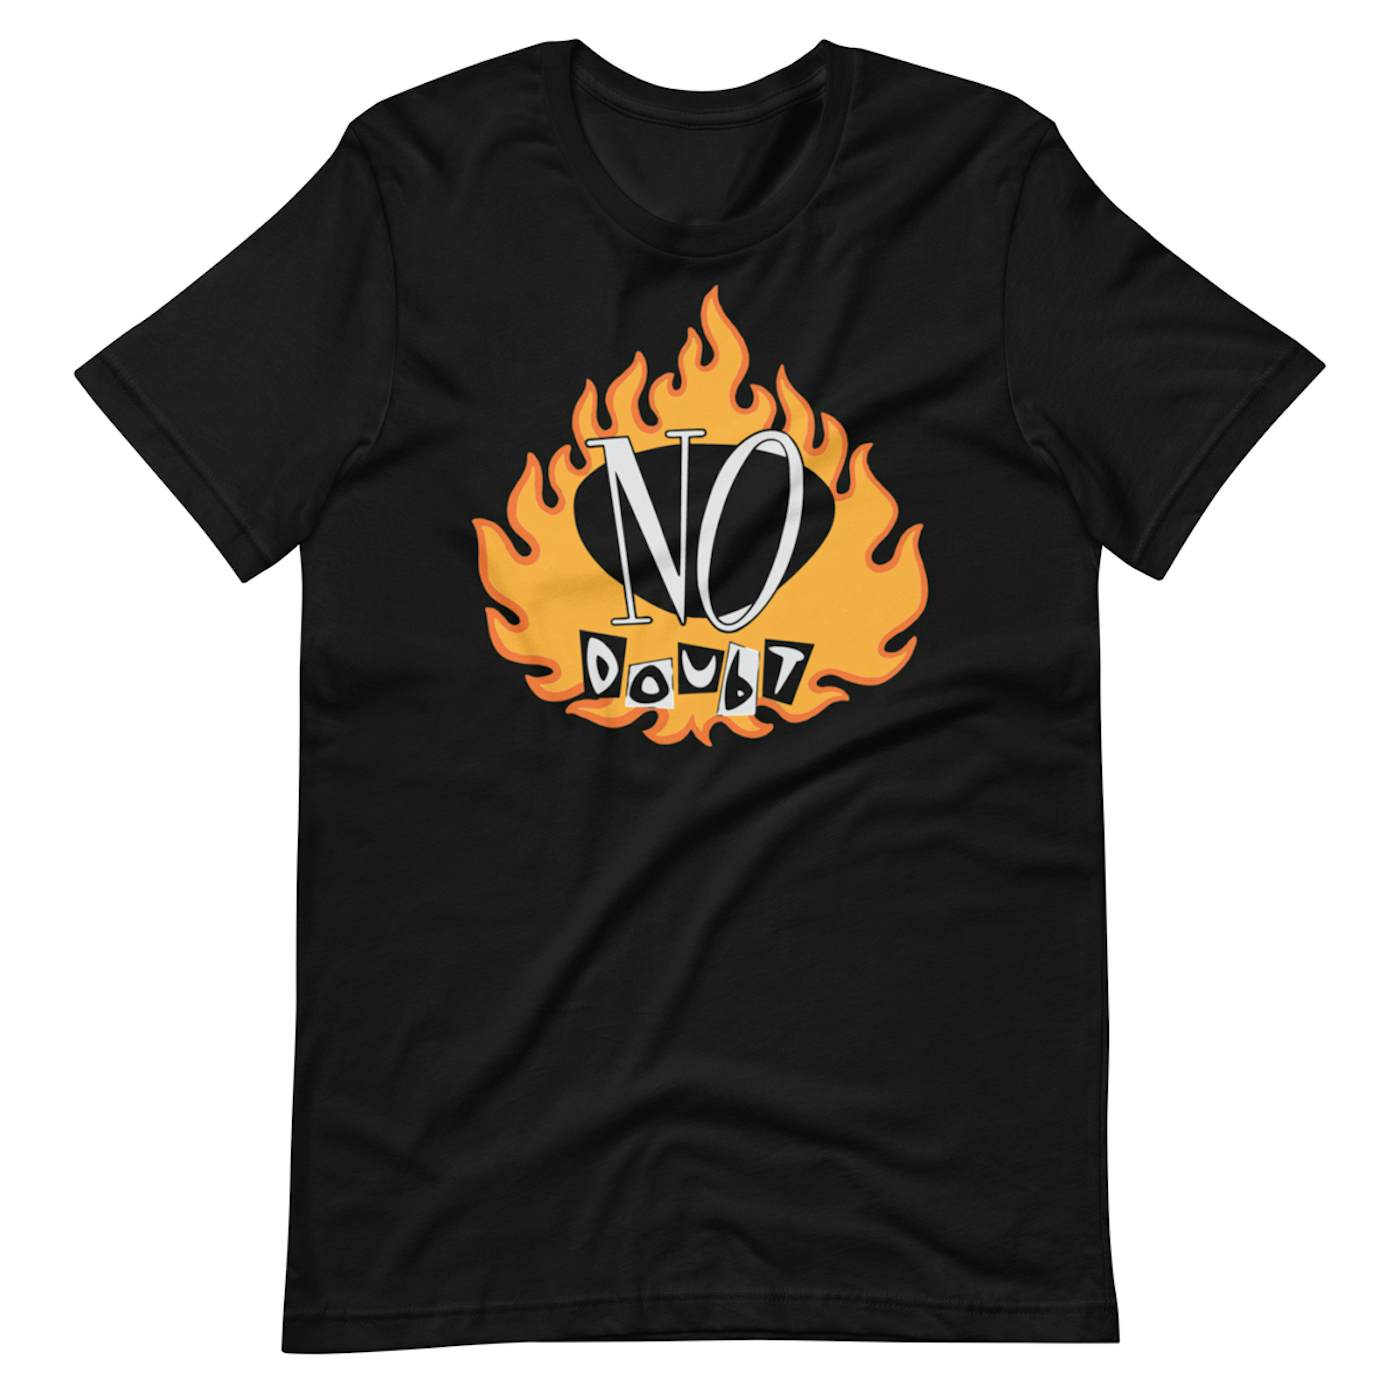 No Doubt Vintage Flame Black T-Shirt